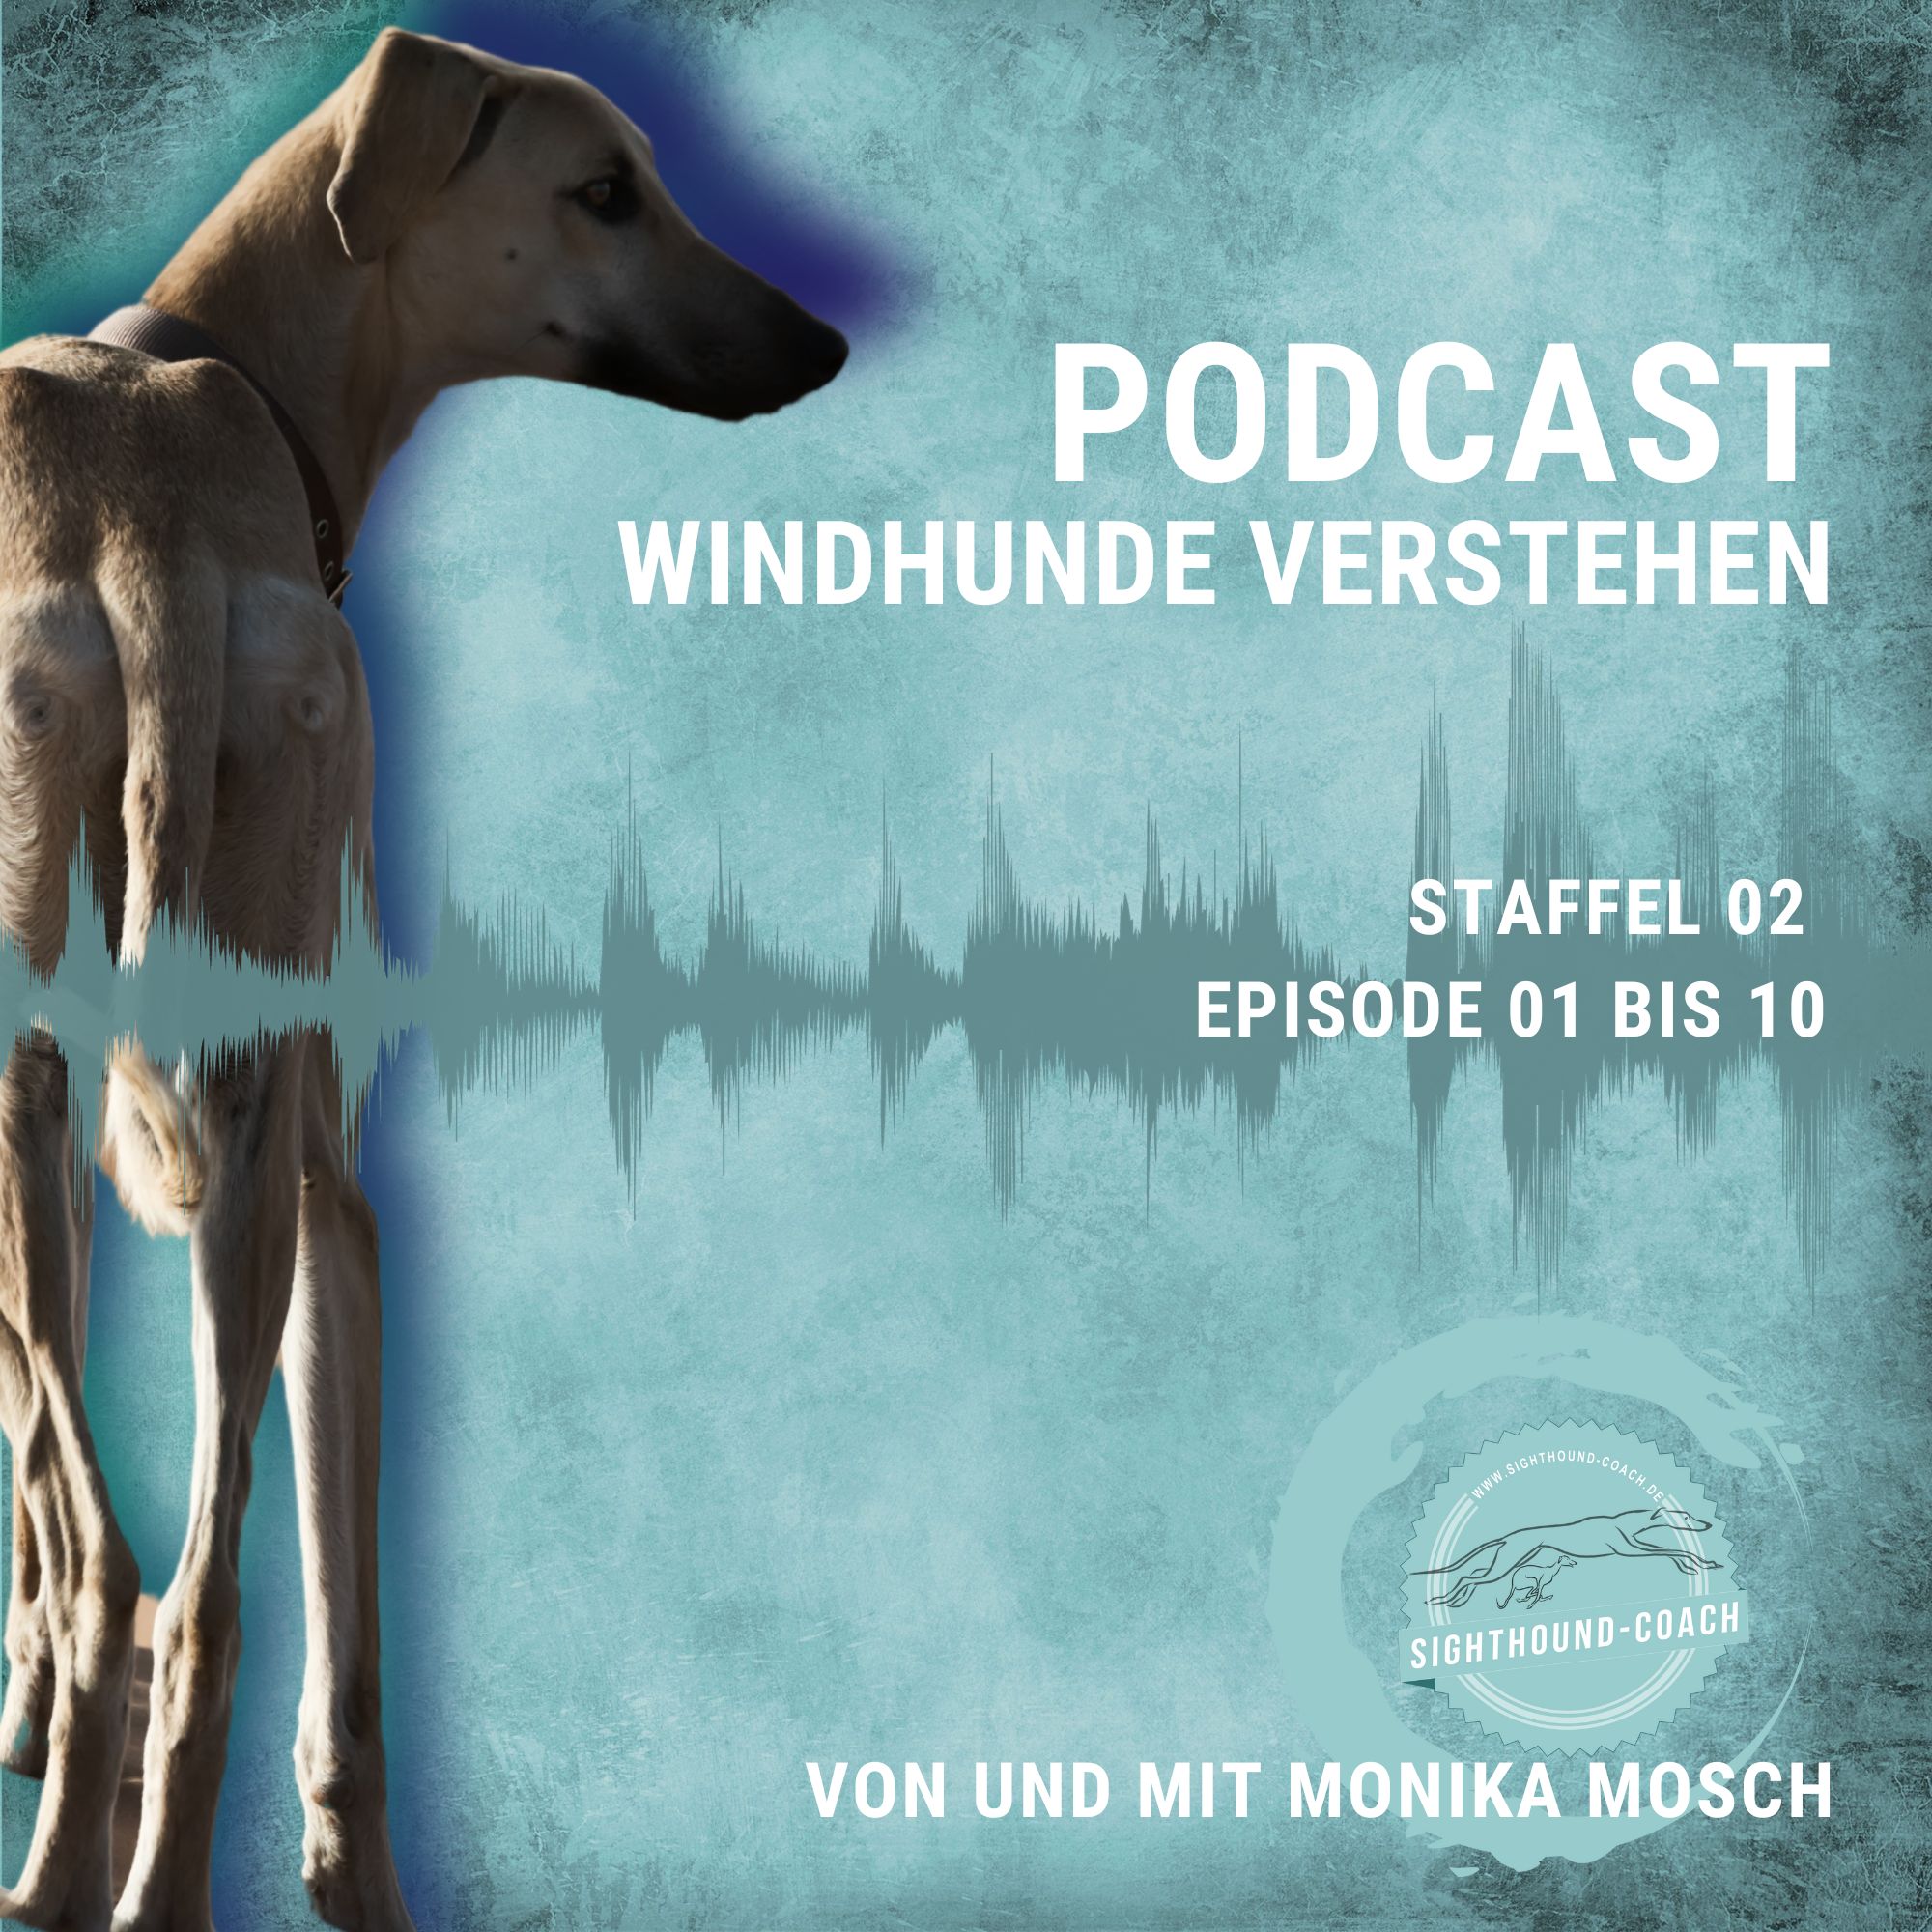 Eure Stimme zählt: Gestaltet mit mir die zweite Staffel des Windhundpodcasts!